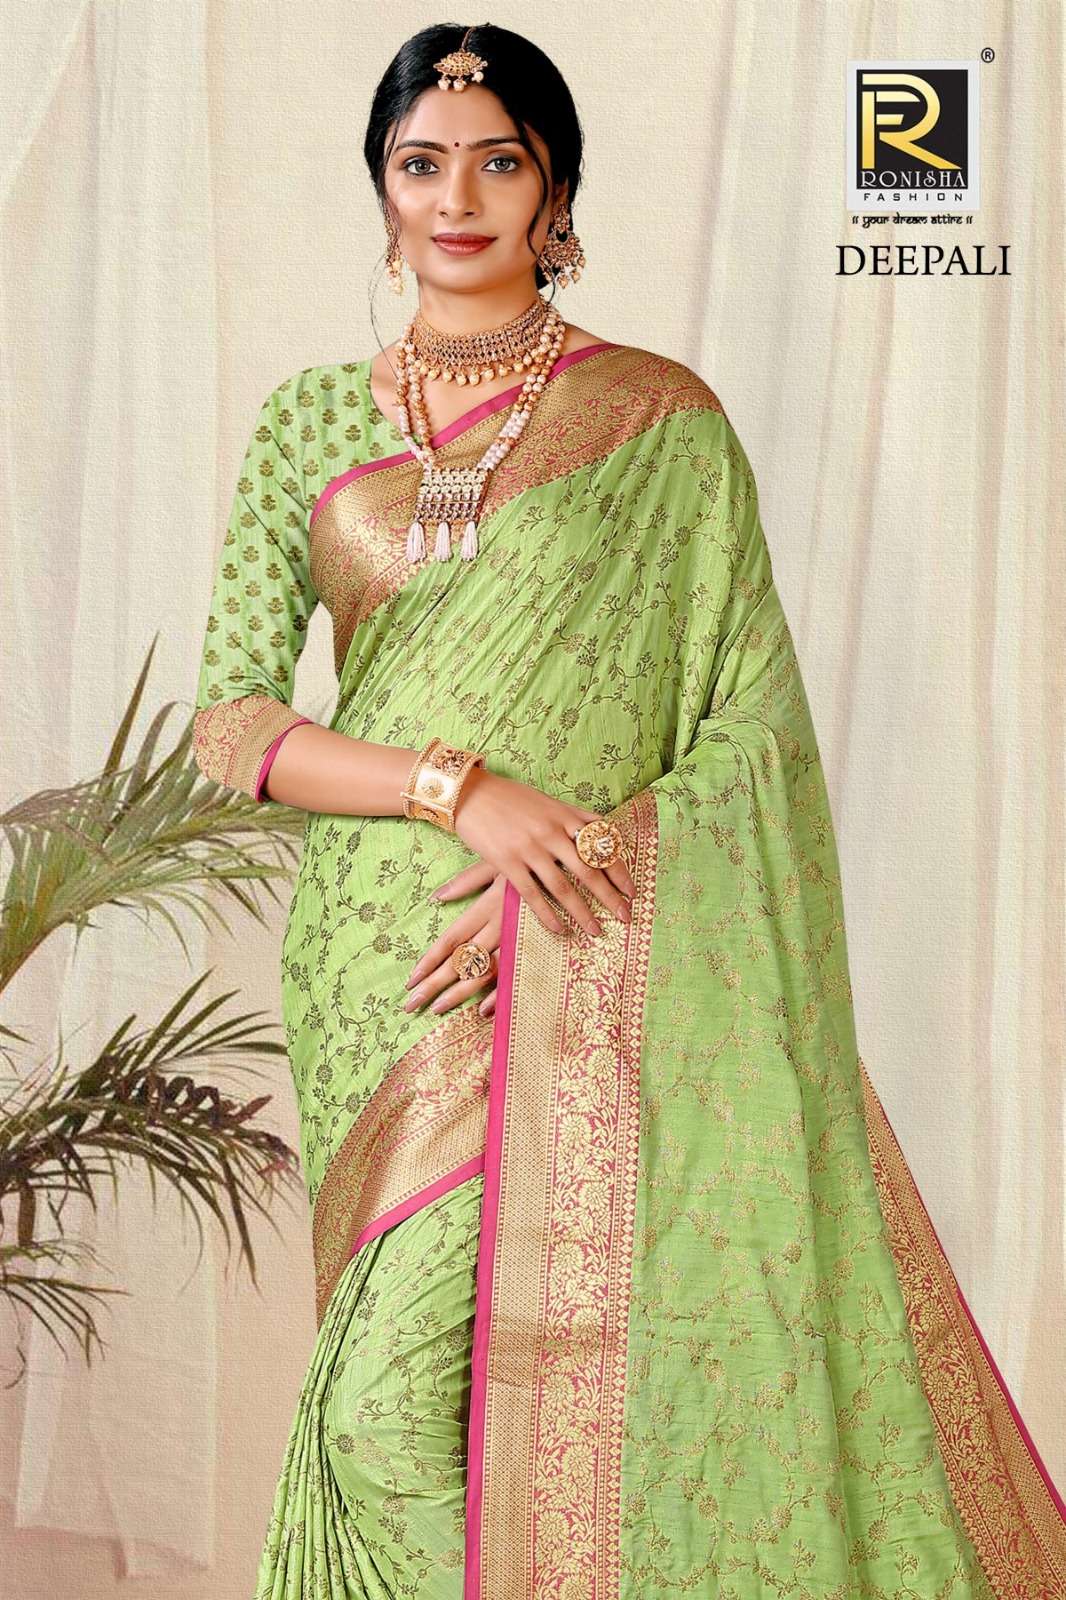 Deepali  by Ranjna saree Banarsi silk exclusive saree collection